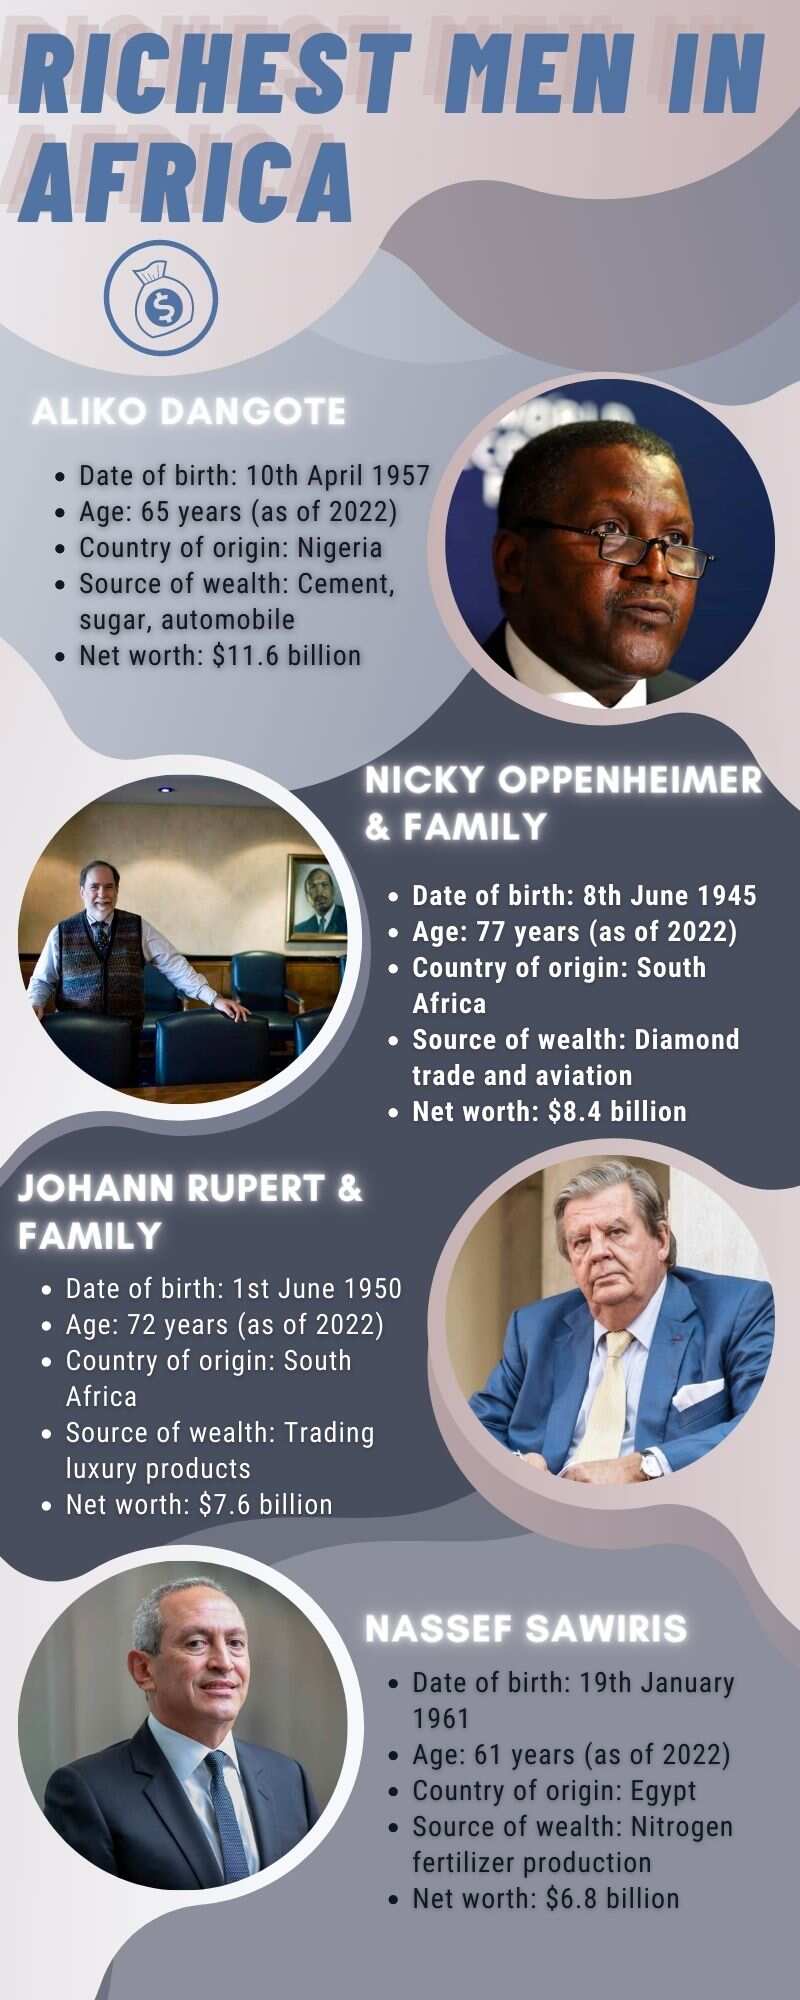 Richest men in Africa